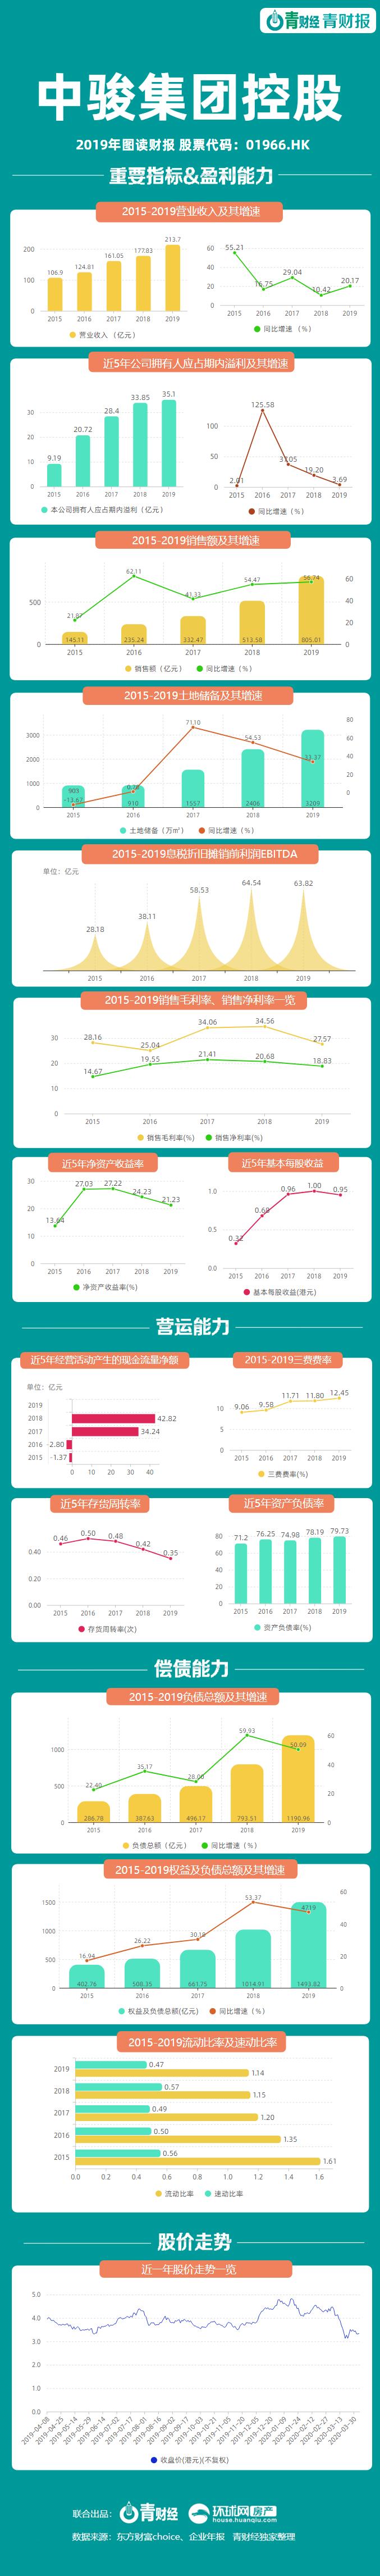 青财报 | 中骏营收213.7亿 负债总额1190.96亿 同比增50%